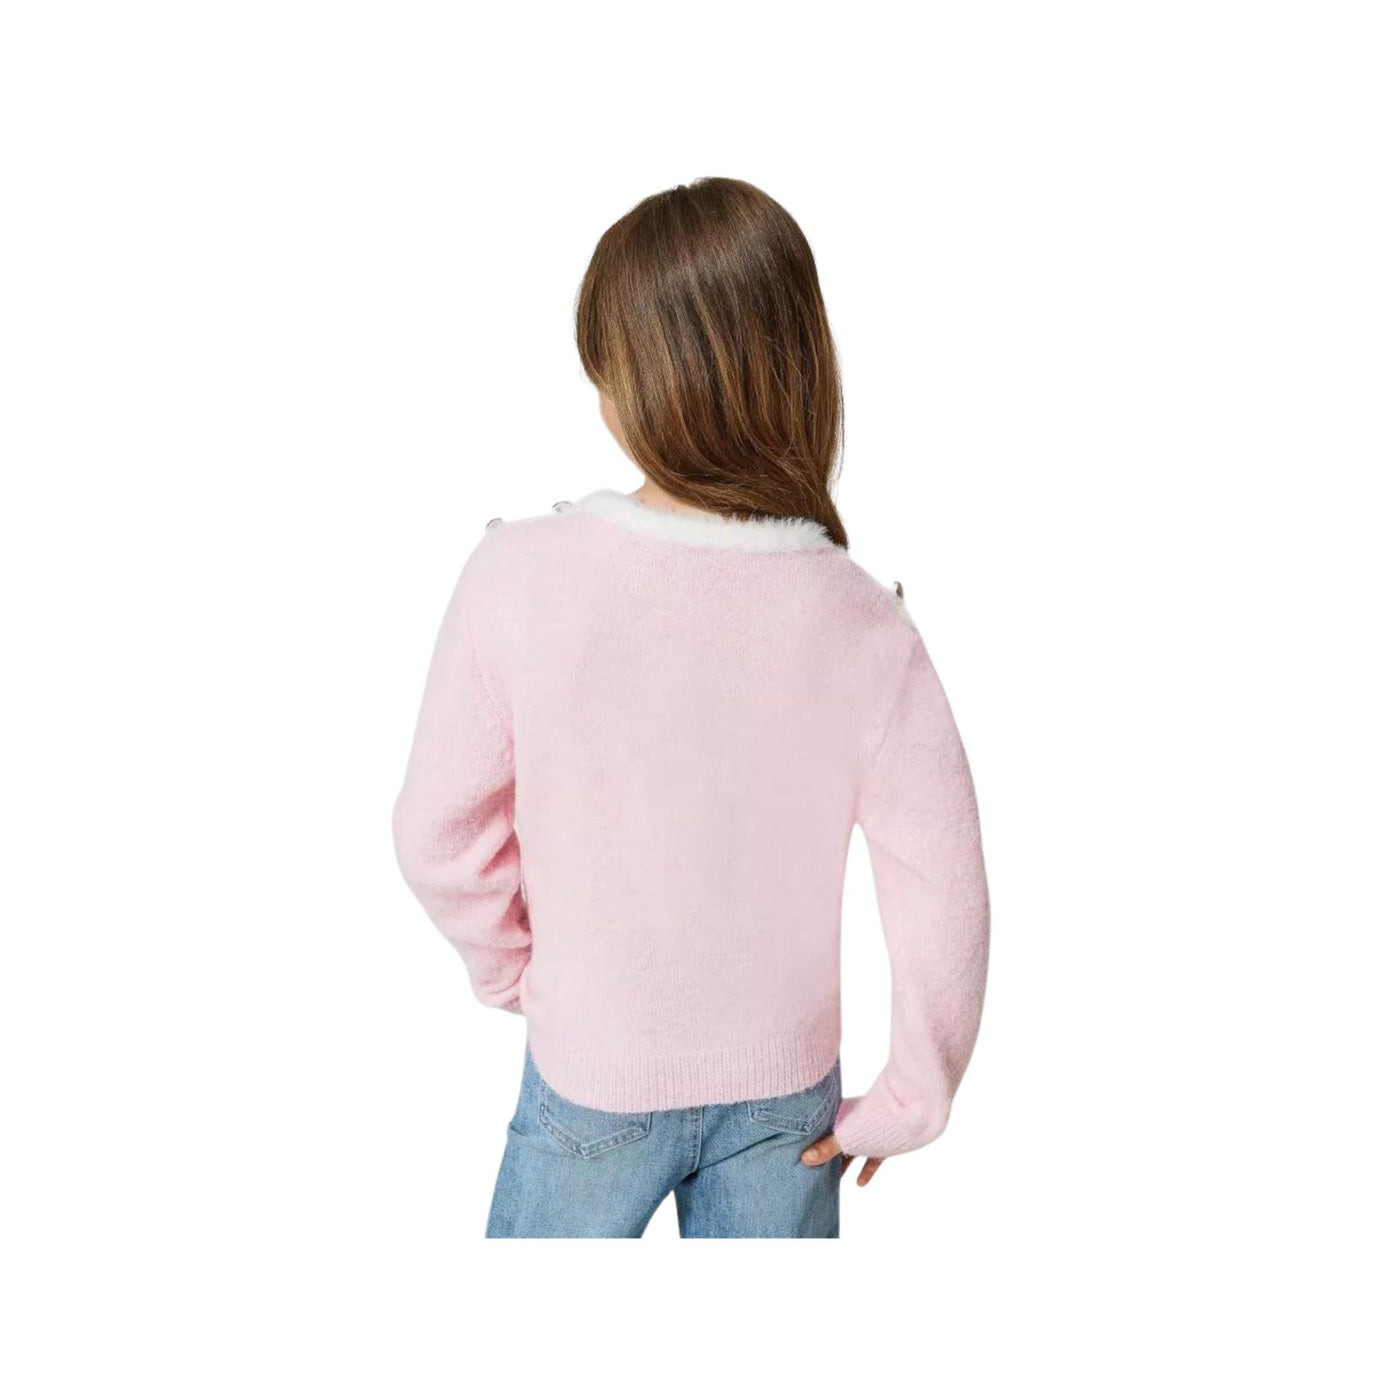 Maglia da bambina rosa firmata Twinset vista retro su modella